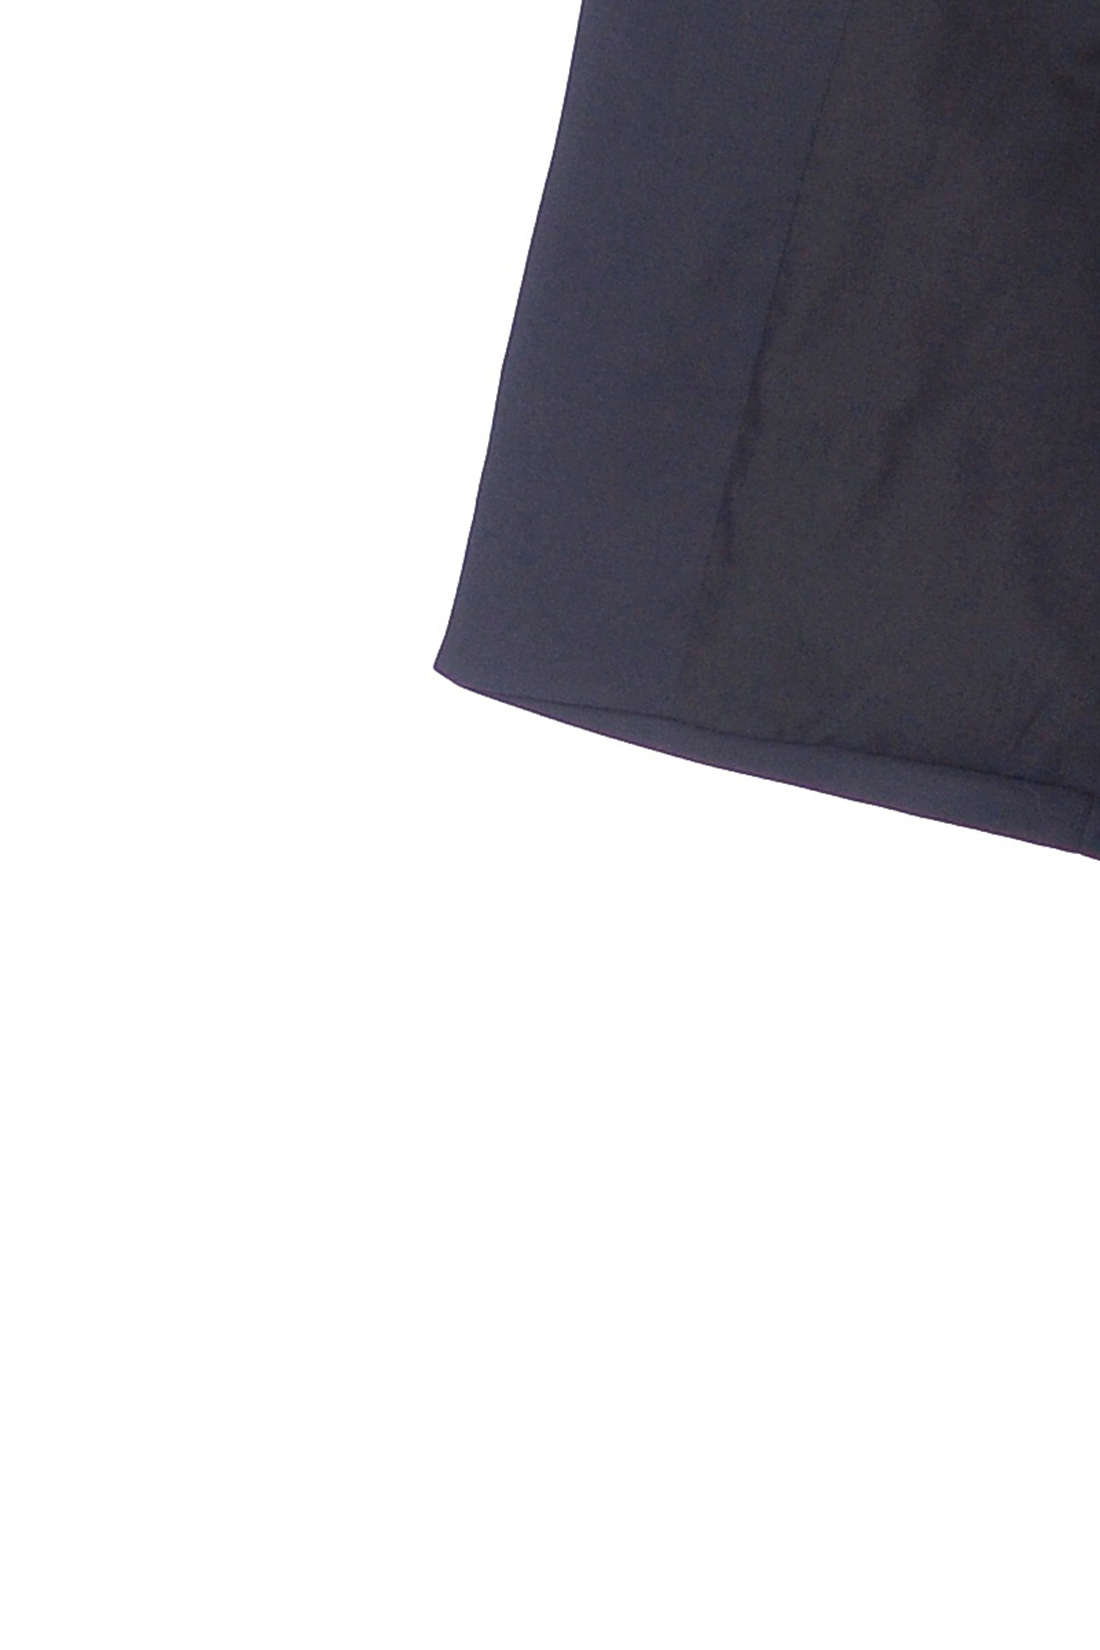 Жакет с присборенными рукавами (арт. baon B129001), размер XL, цвет черный Жакет с присборенными рукавами (арт. baon B129001) - фото 3